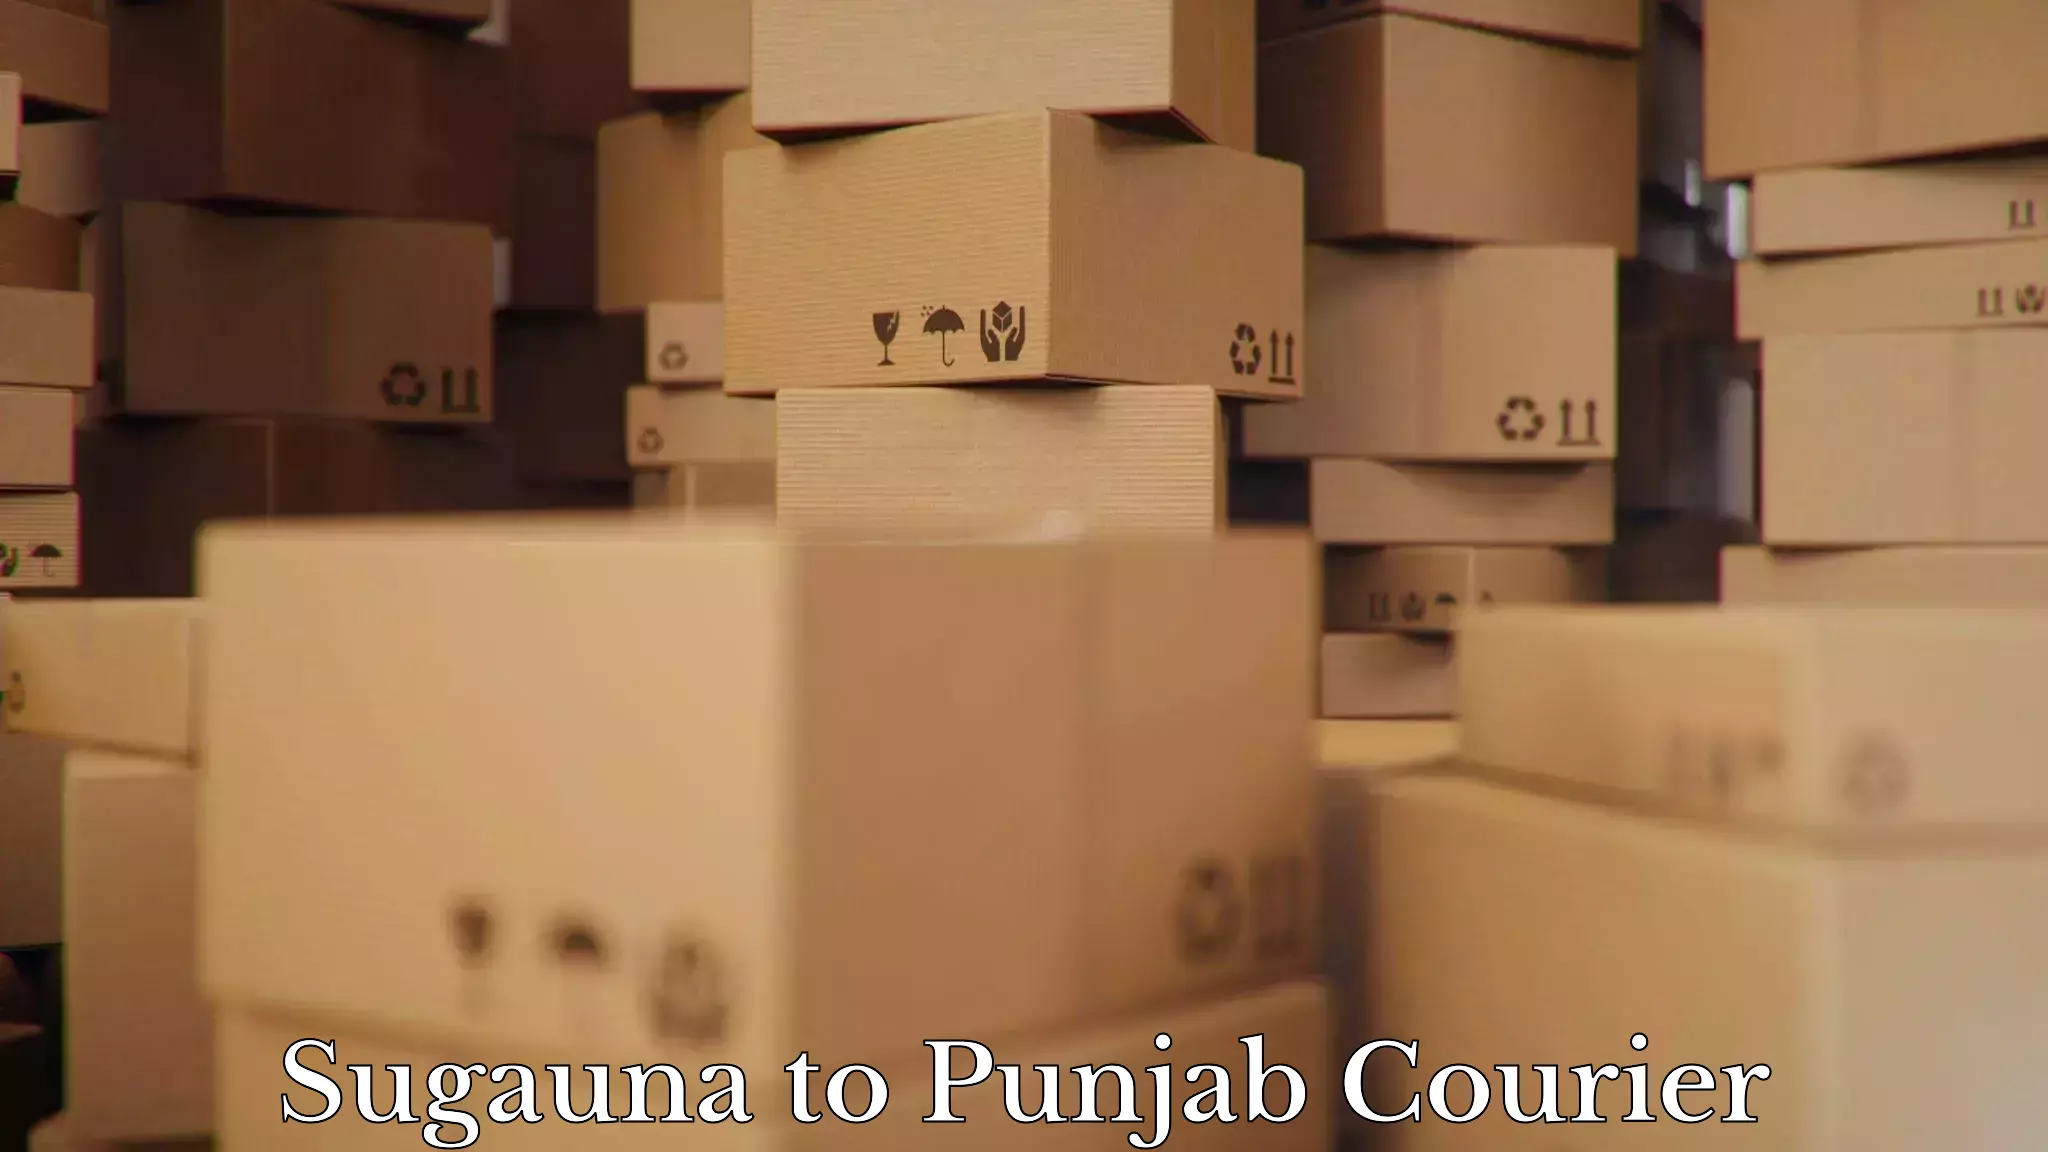 Reliable movers Sugauna to Punjab